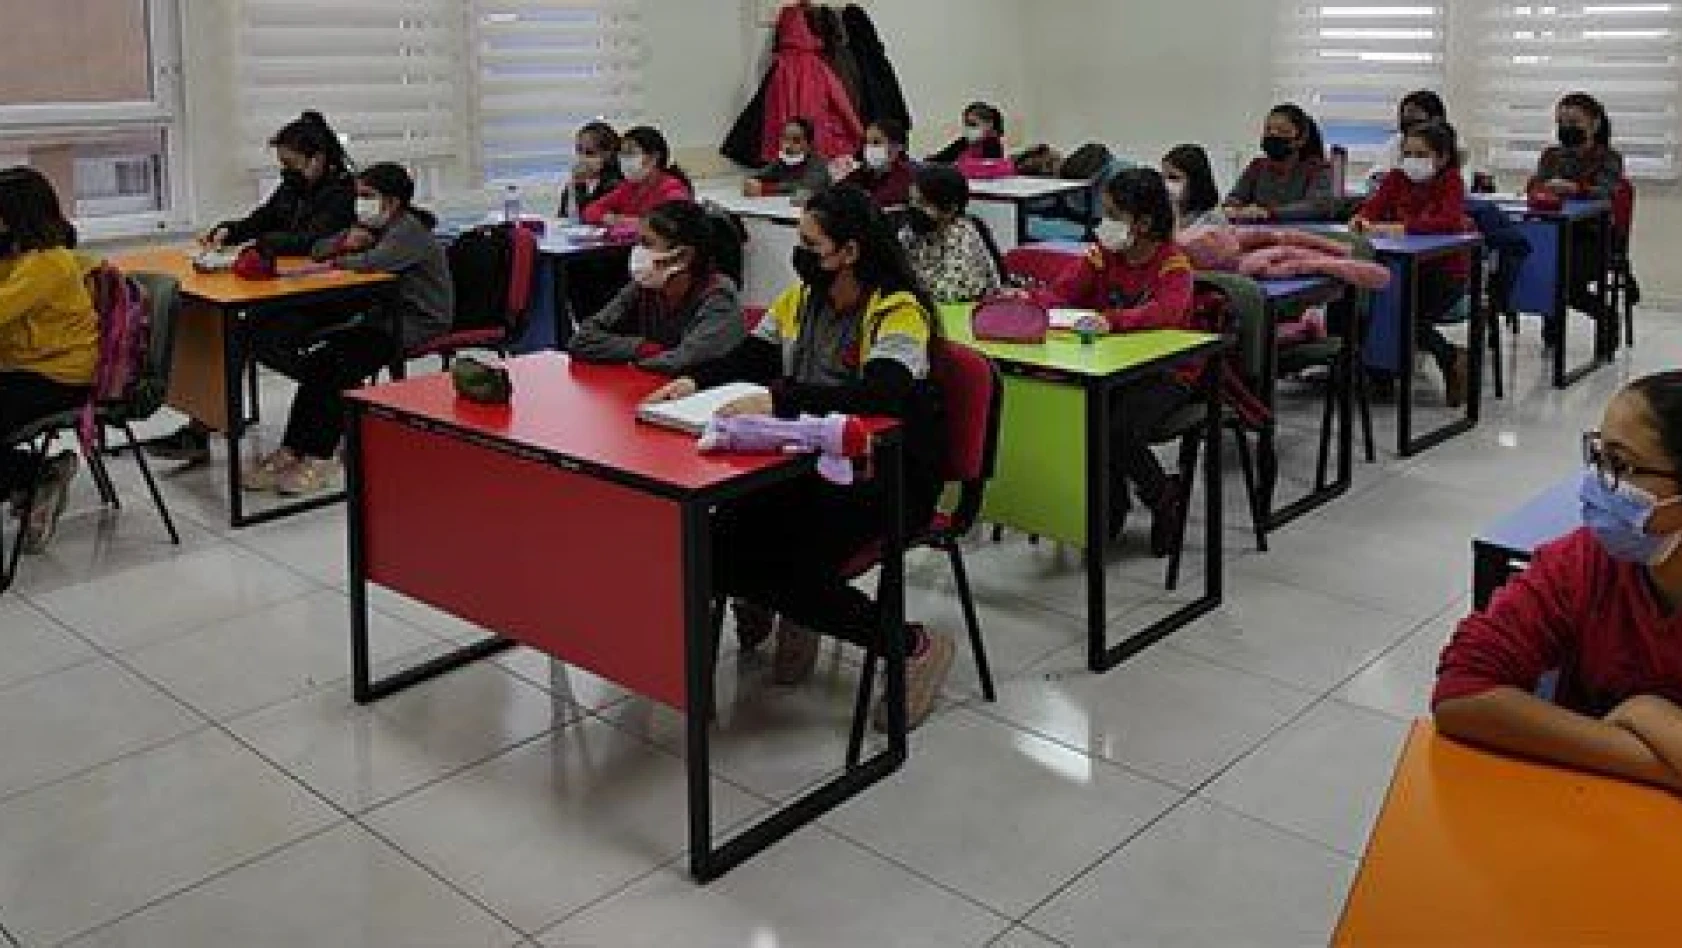 KAYMEK'ten LGS ve YKS hazırlık öğrencilerine deneme sınavı